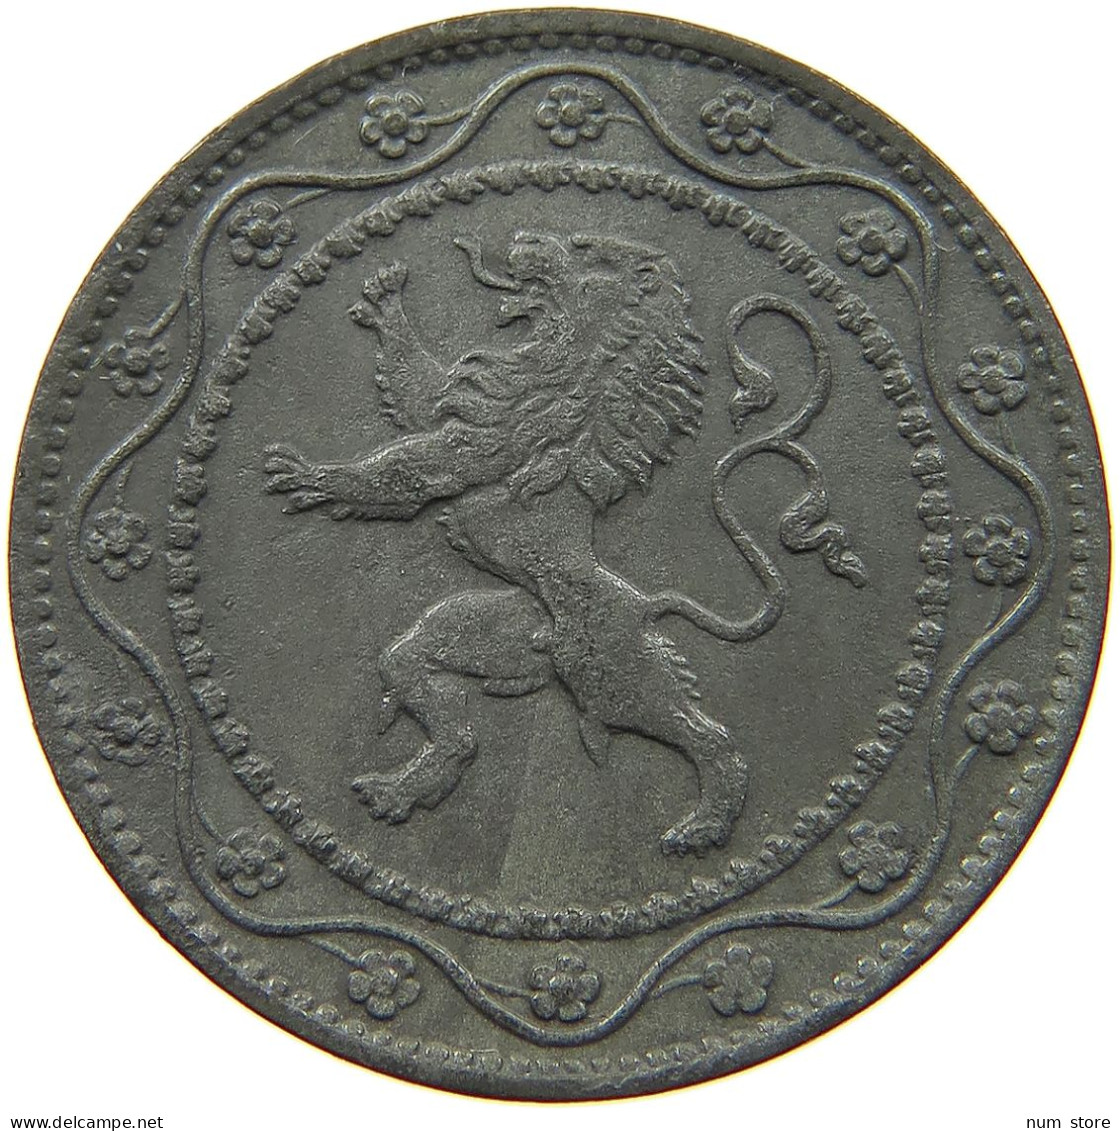 BELGIUM 25 CENTIMES 1916 #a056 0721 - 25 Cents